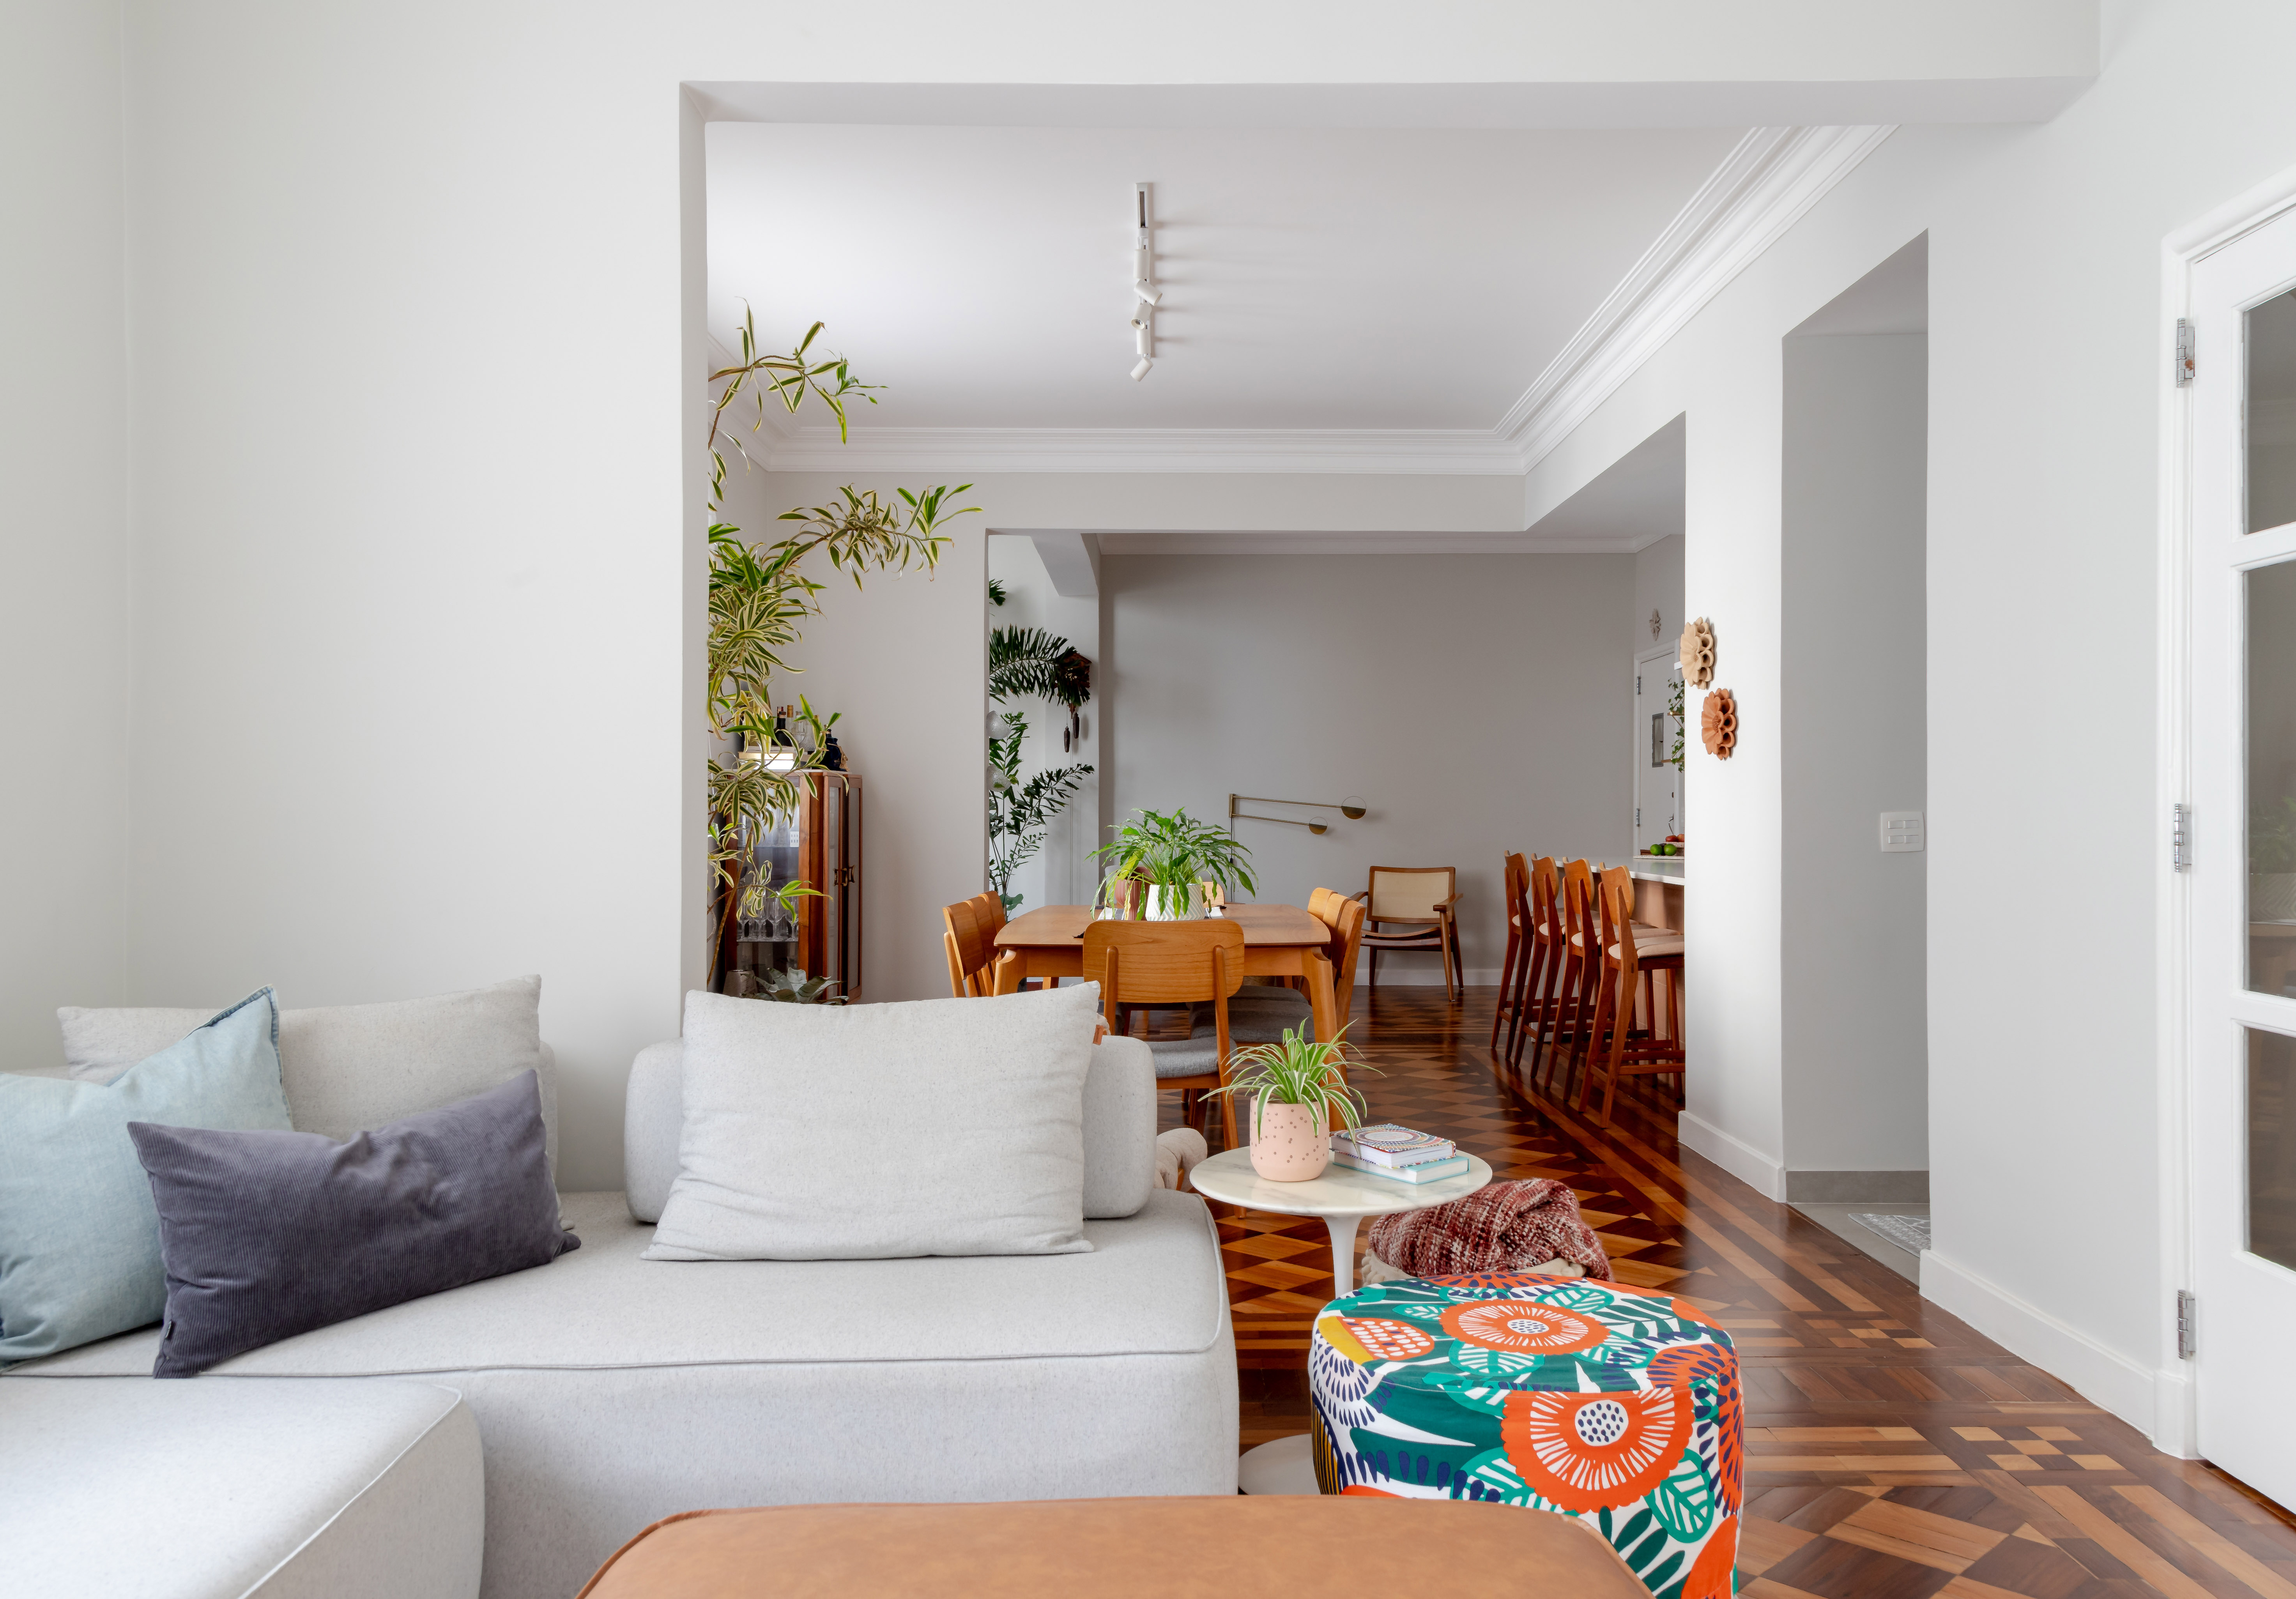 Piso de taco, janelas brancas e sancas dão charme parisiense a este apê. Projeto de Ana Paula Crivelenti. Na foto, sala de estar, pufes, sofá cinza claro.